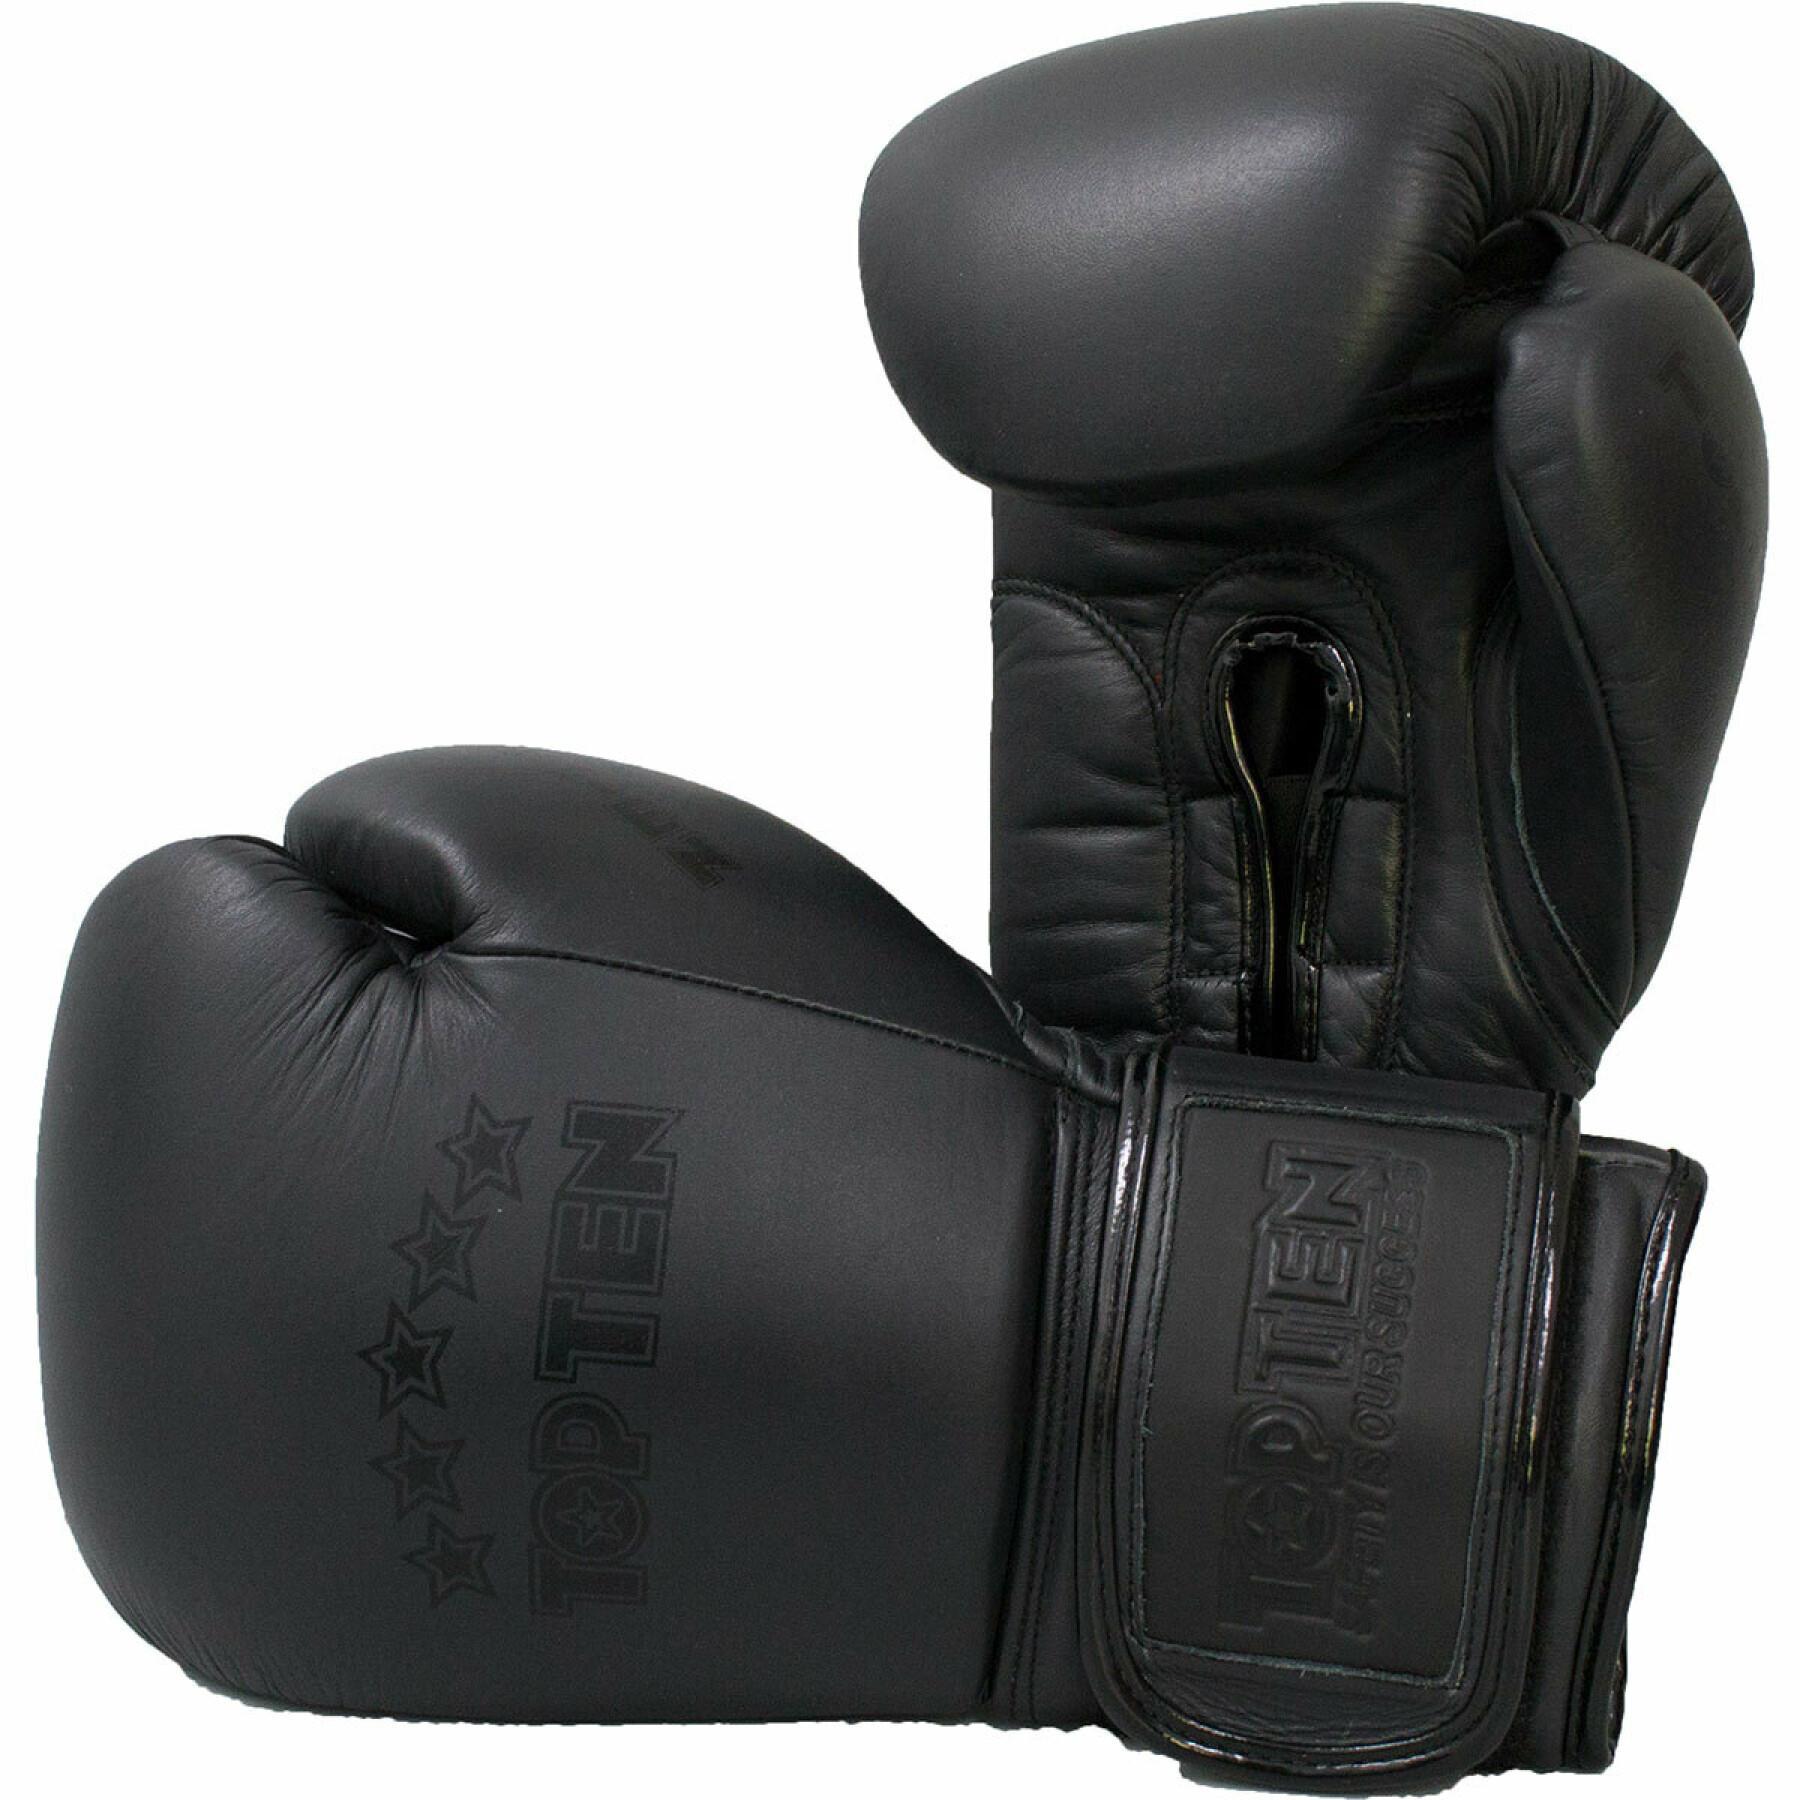 Multibox-Handschuhe Top Ten black "N"